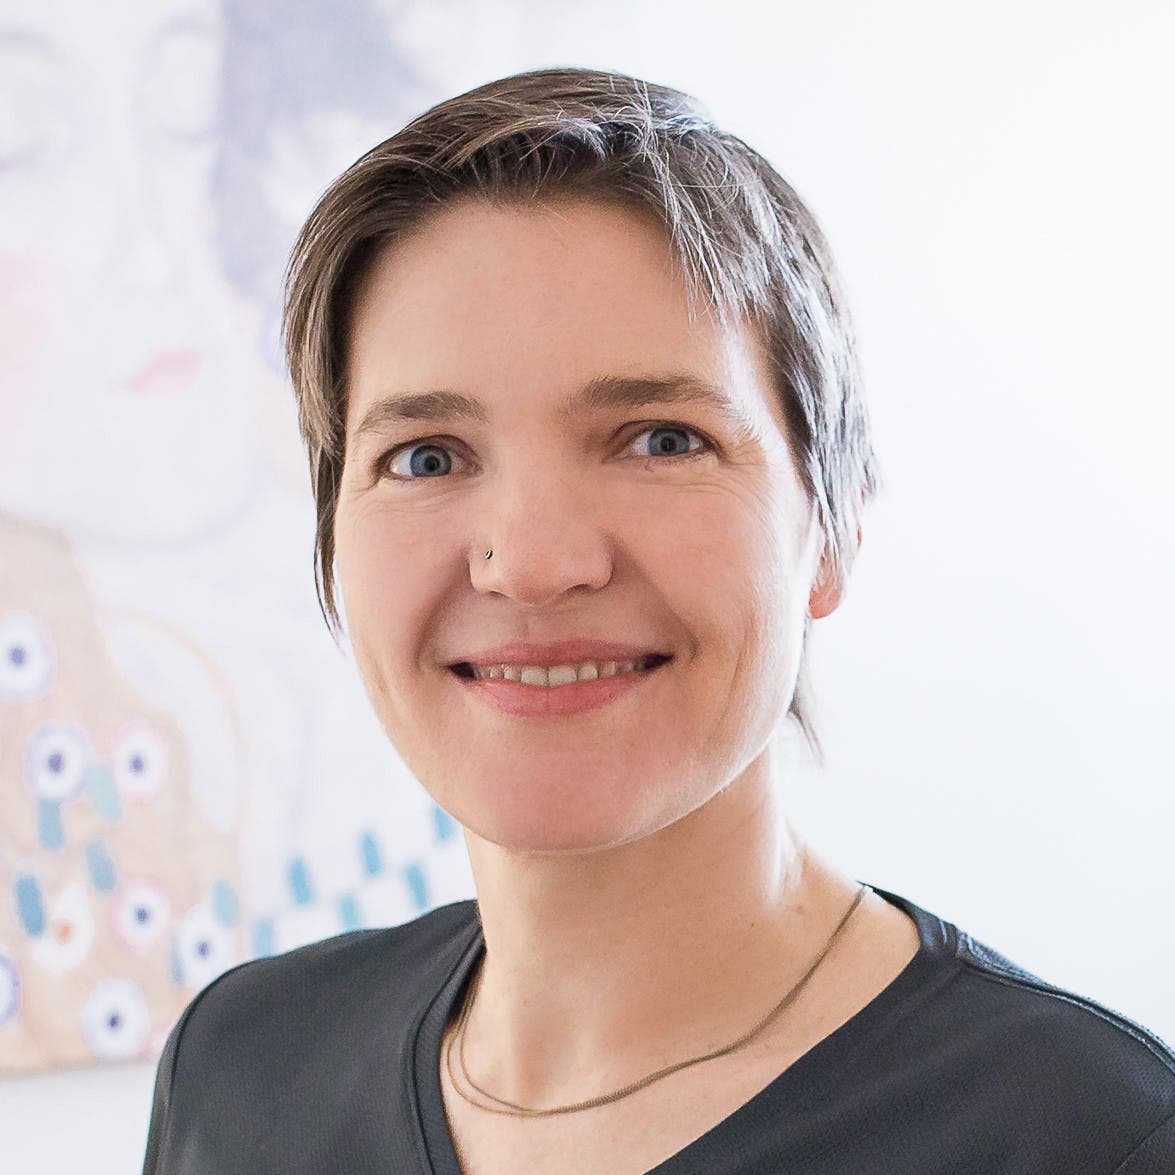 Die Hebamme und zertifizierte Stillberaterin Simone Lehwald ist Mitarbeiterin am Europäischen Institut für Stillen und Laktation.